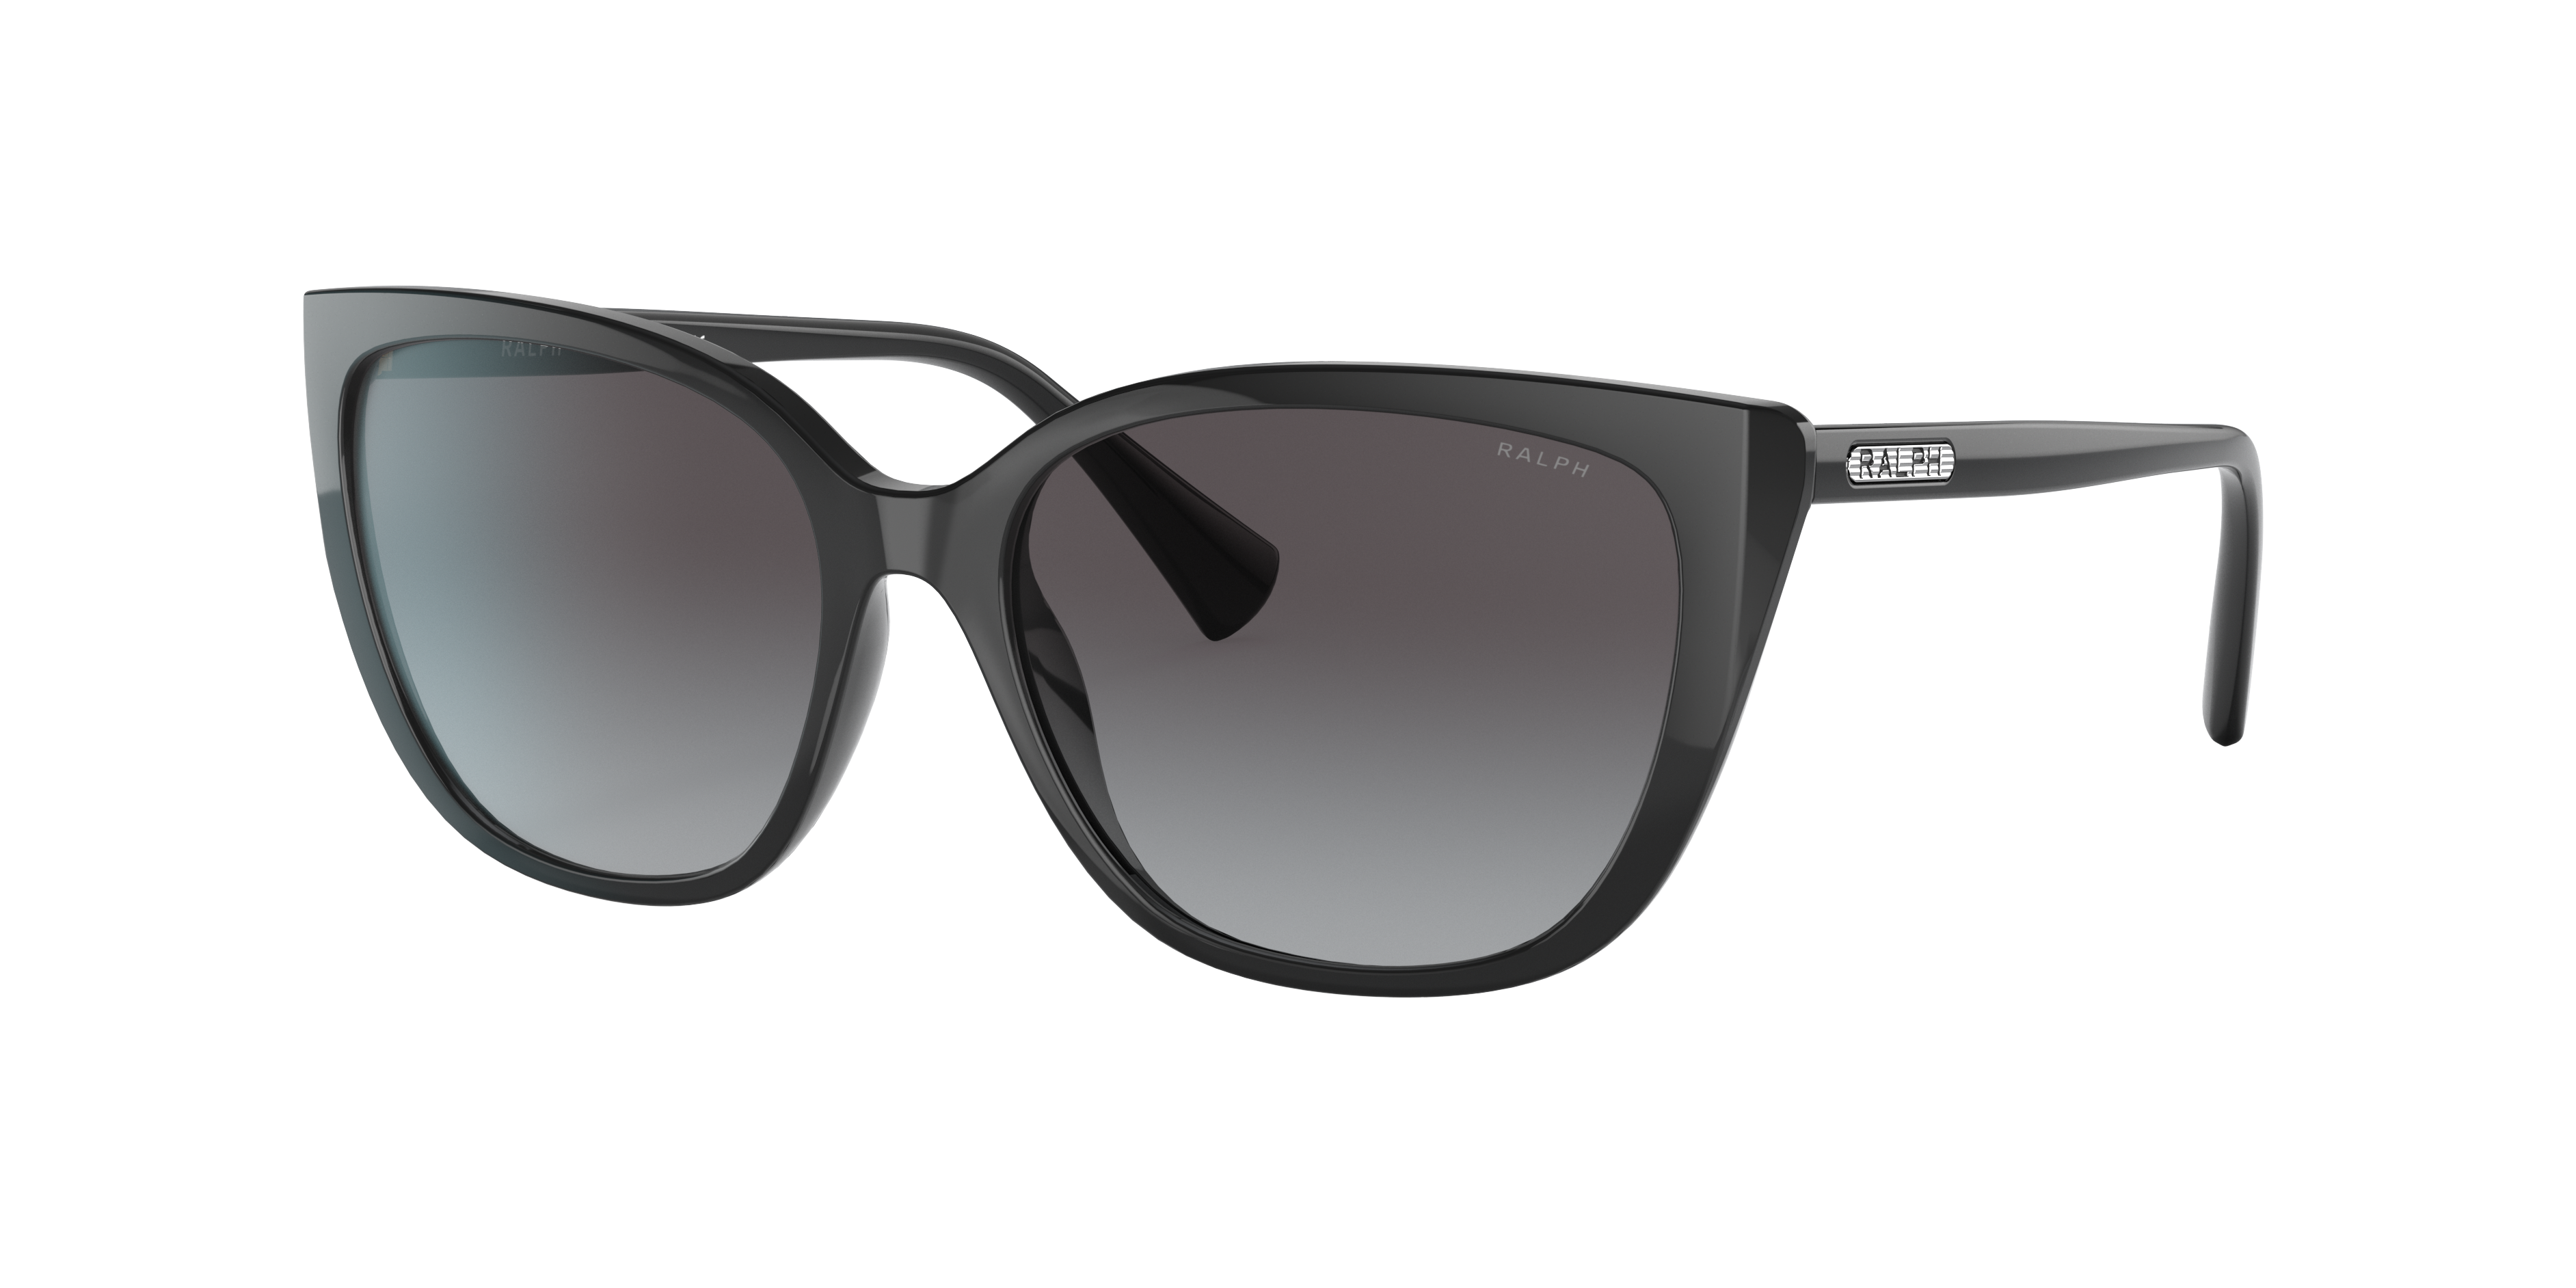 Consulte nosso catálogo de Óculos de Sol Ralph Lauren Eyewear com diversos modelos e preços para sua escolha.